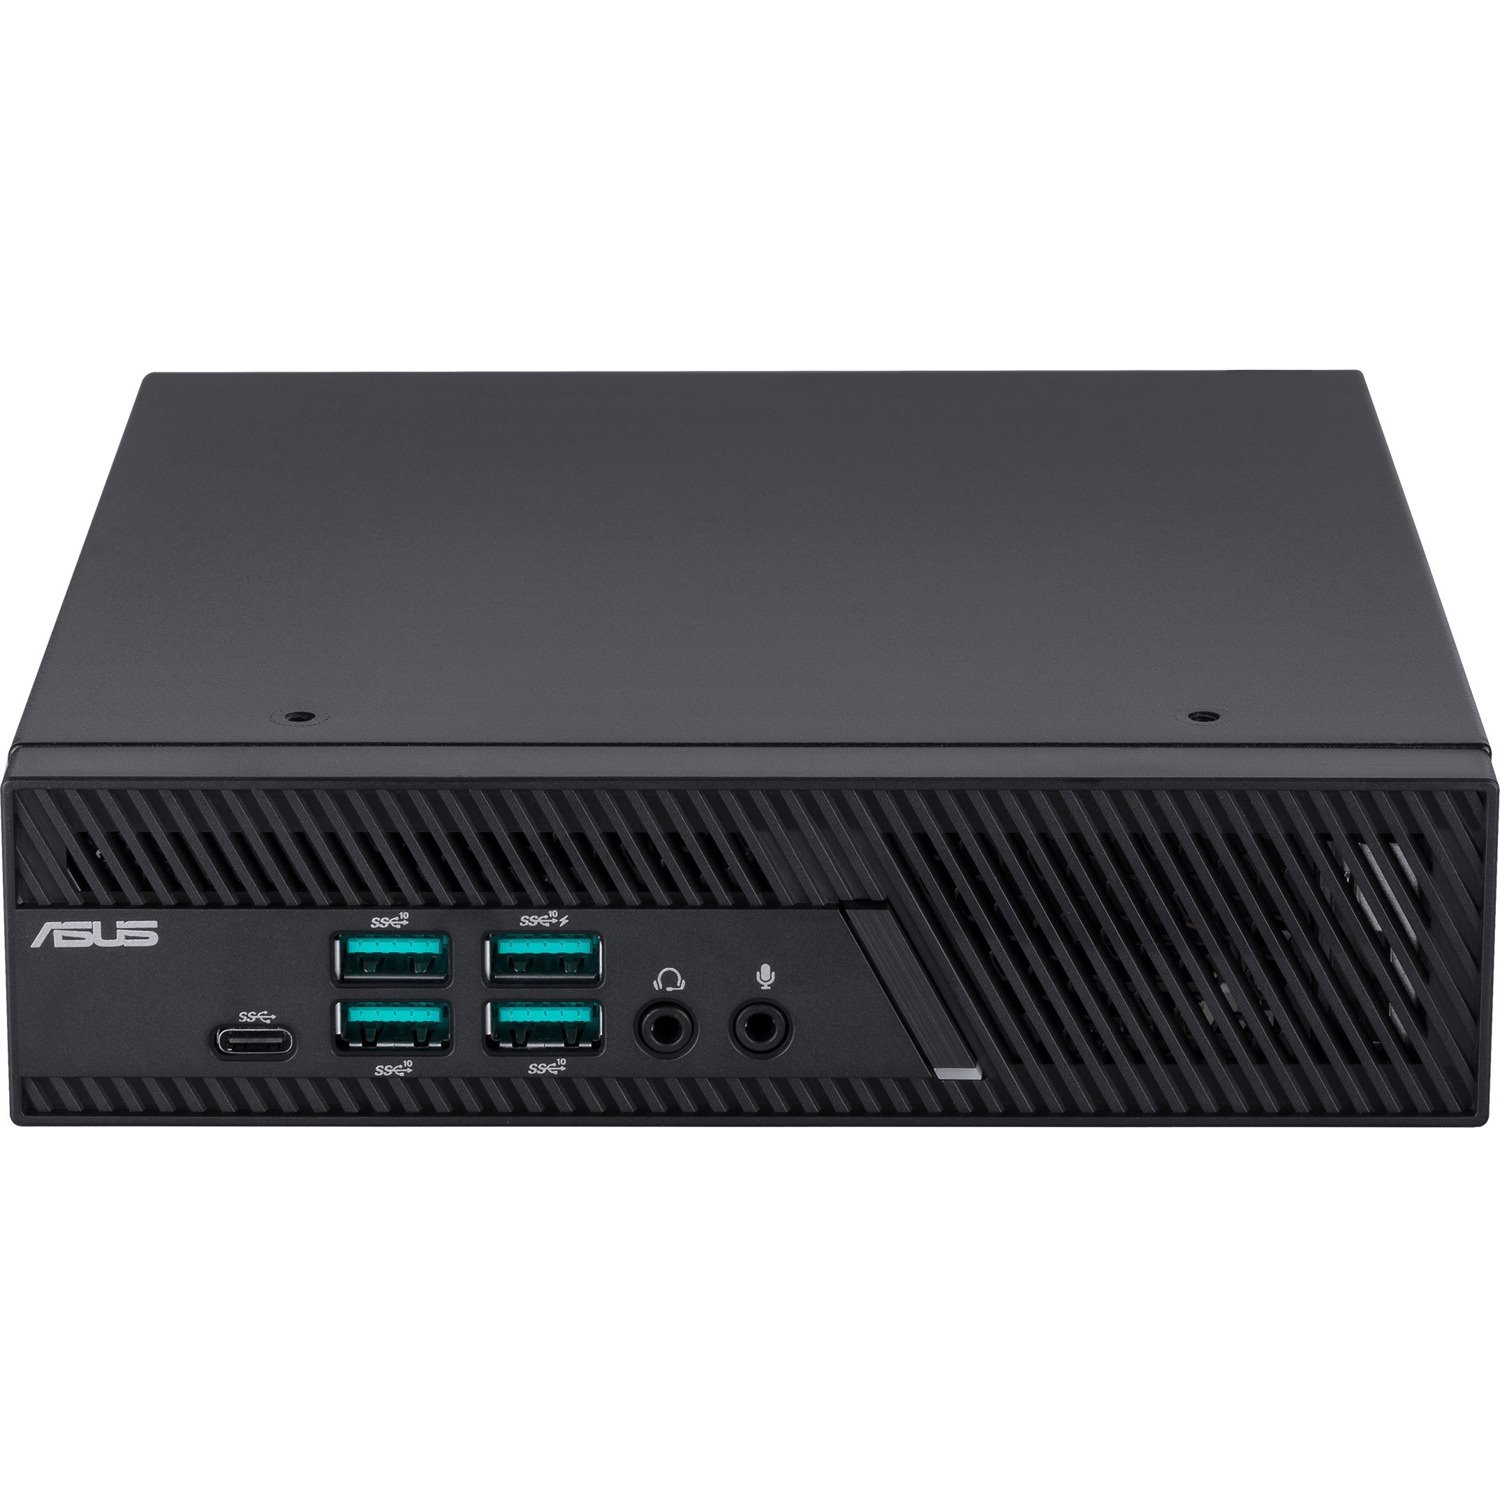 Asus PB62-SYS582PXTH Desktop Computer - Intel Core i5 11th Gen i5-11400 2.60 GHz - 8 GB RAM DDR4 SDRAM - 256 GB SSD - Mini PC